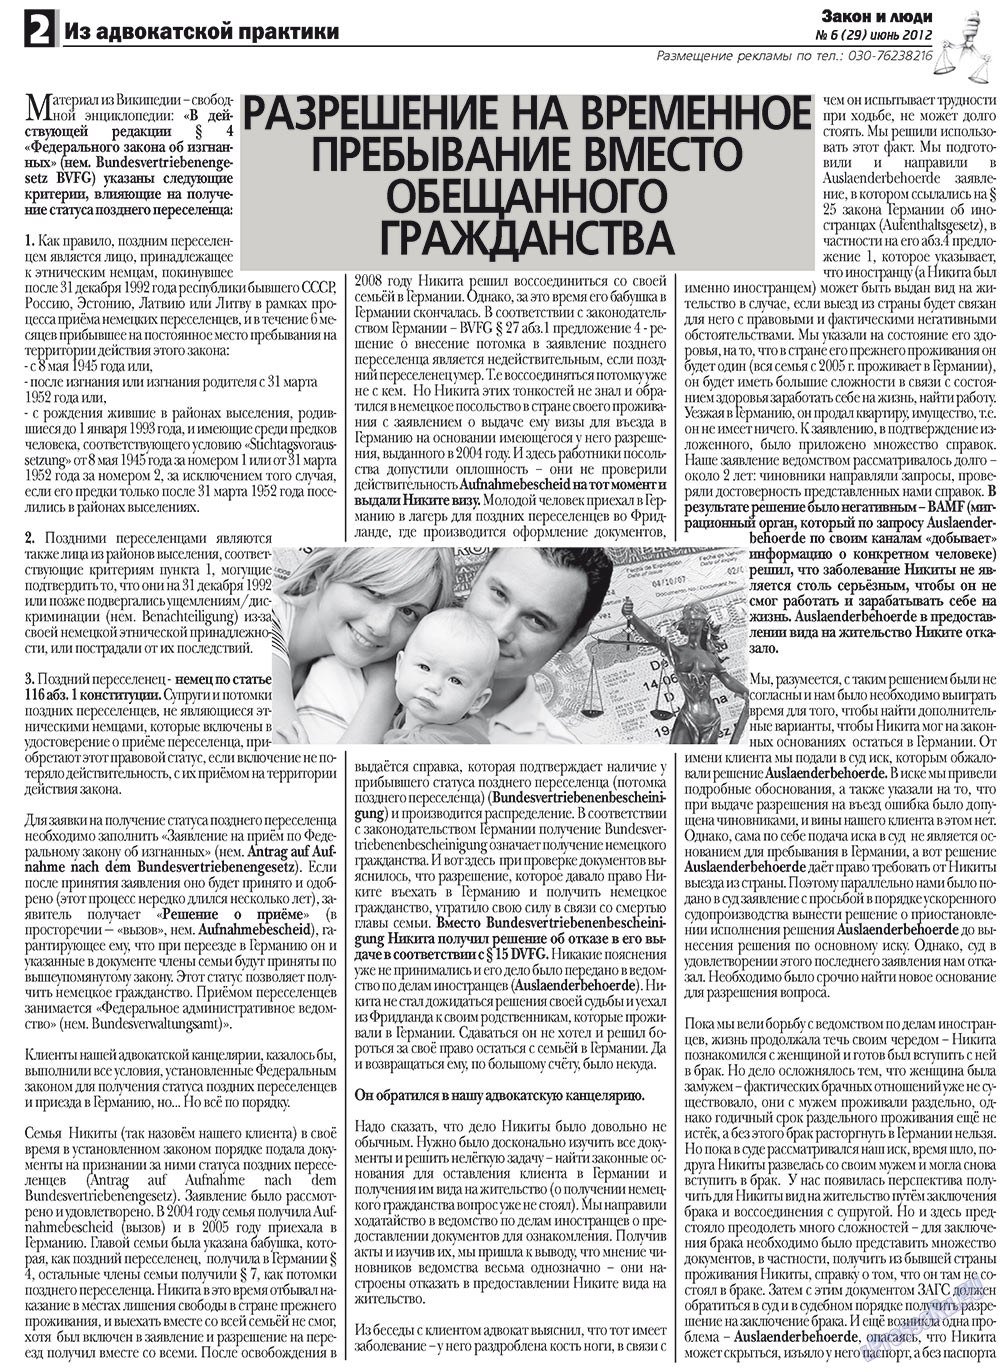 Закон и люди, газета. 2012 №6 стр.2